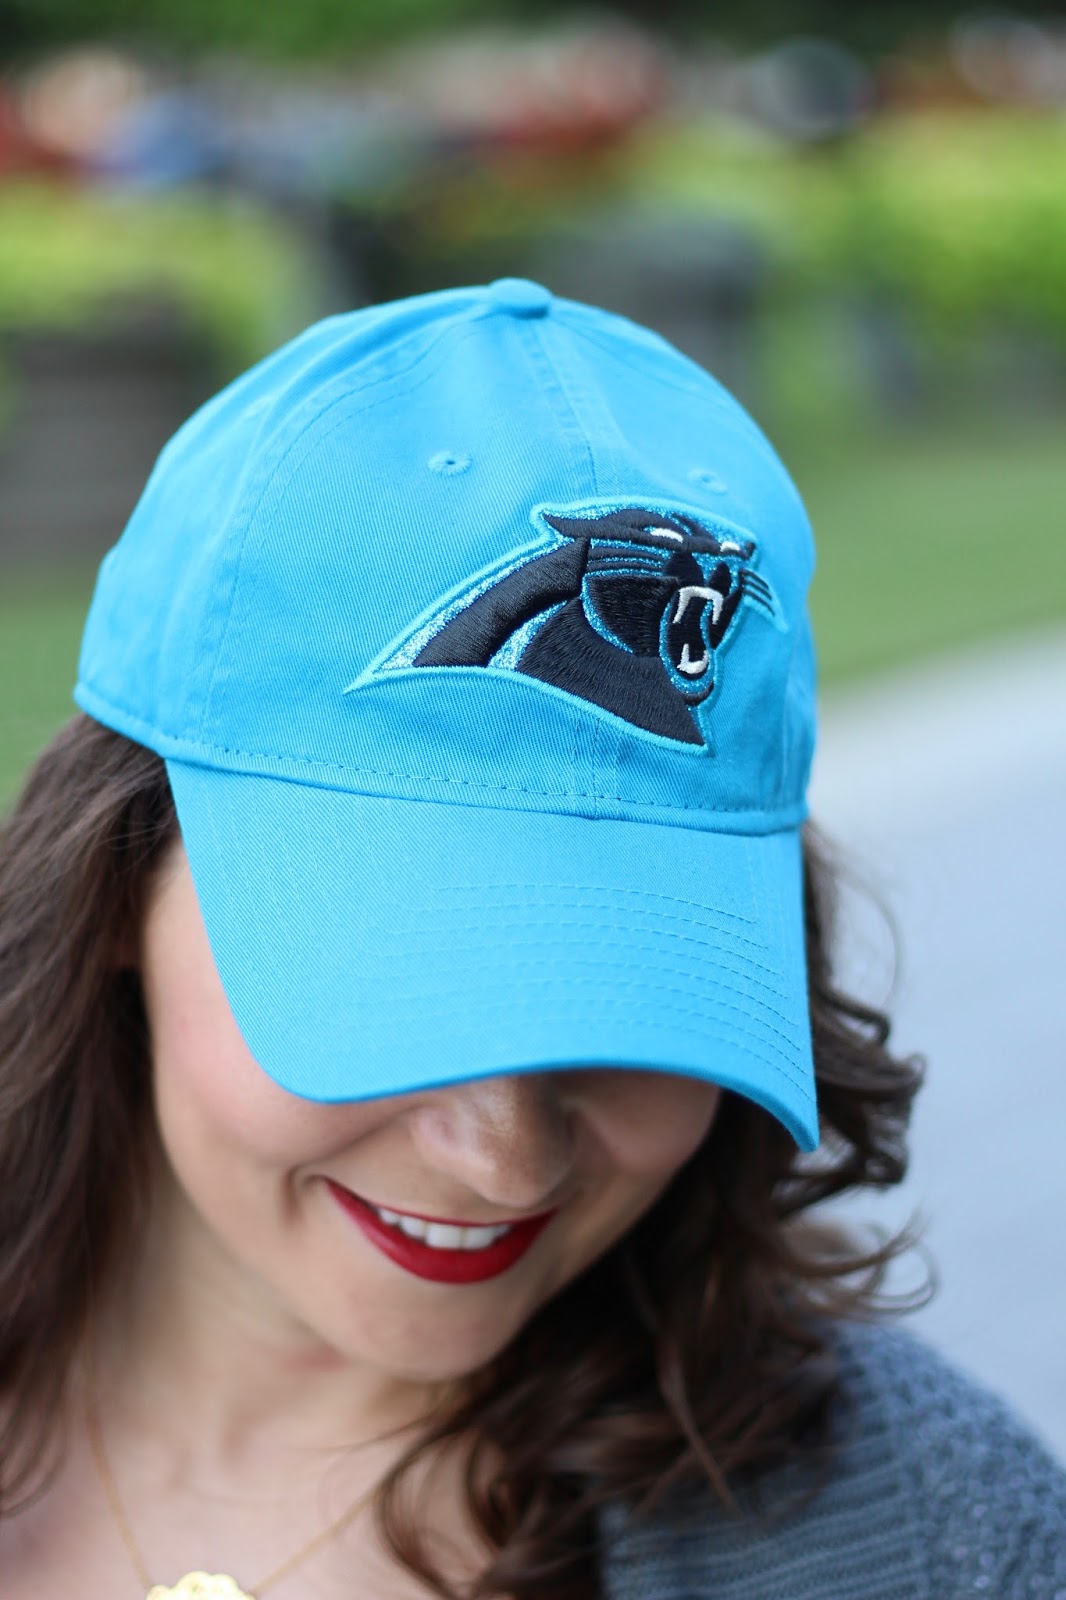 Carolina Panthers blue baseball hat